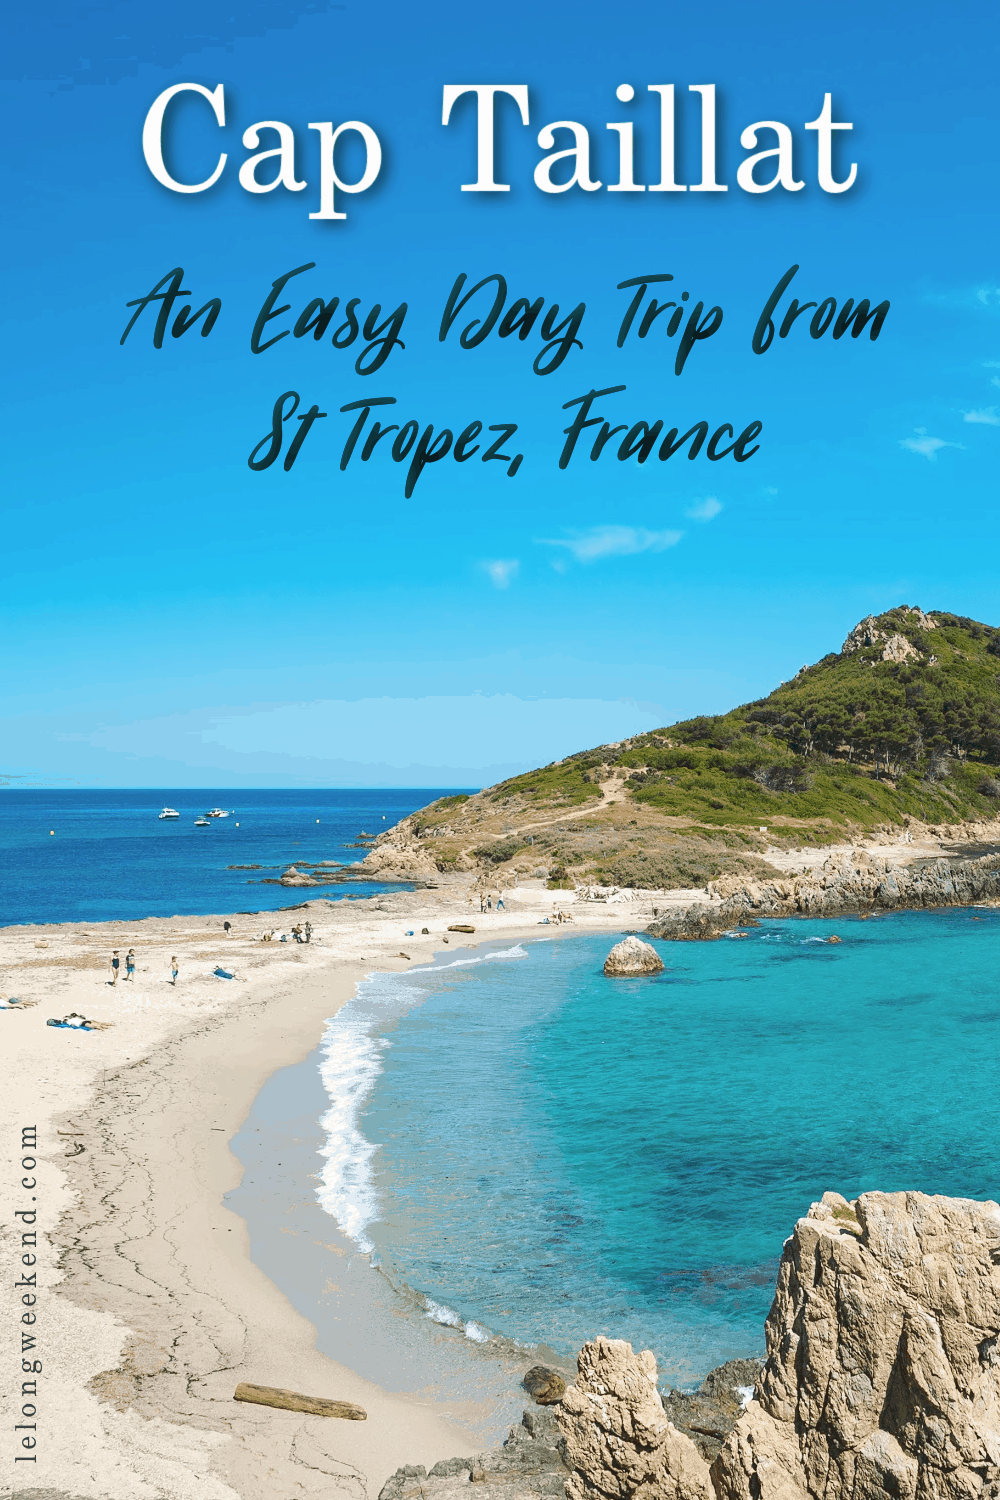 Top Saint Tropez beaches - Escalet beach and Cap Taillat beach